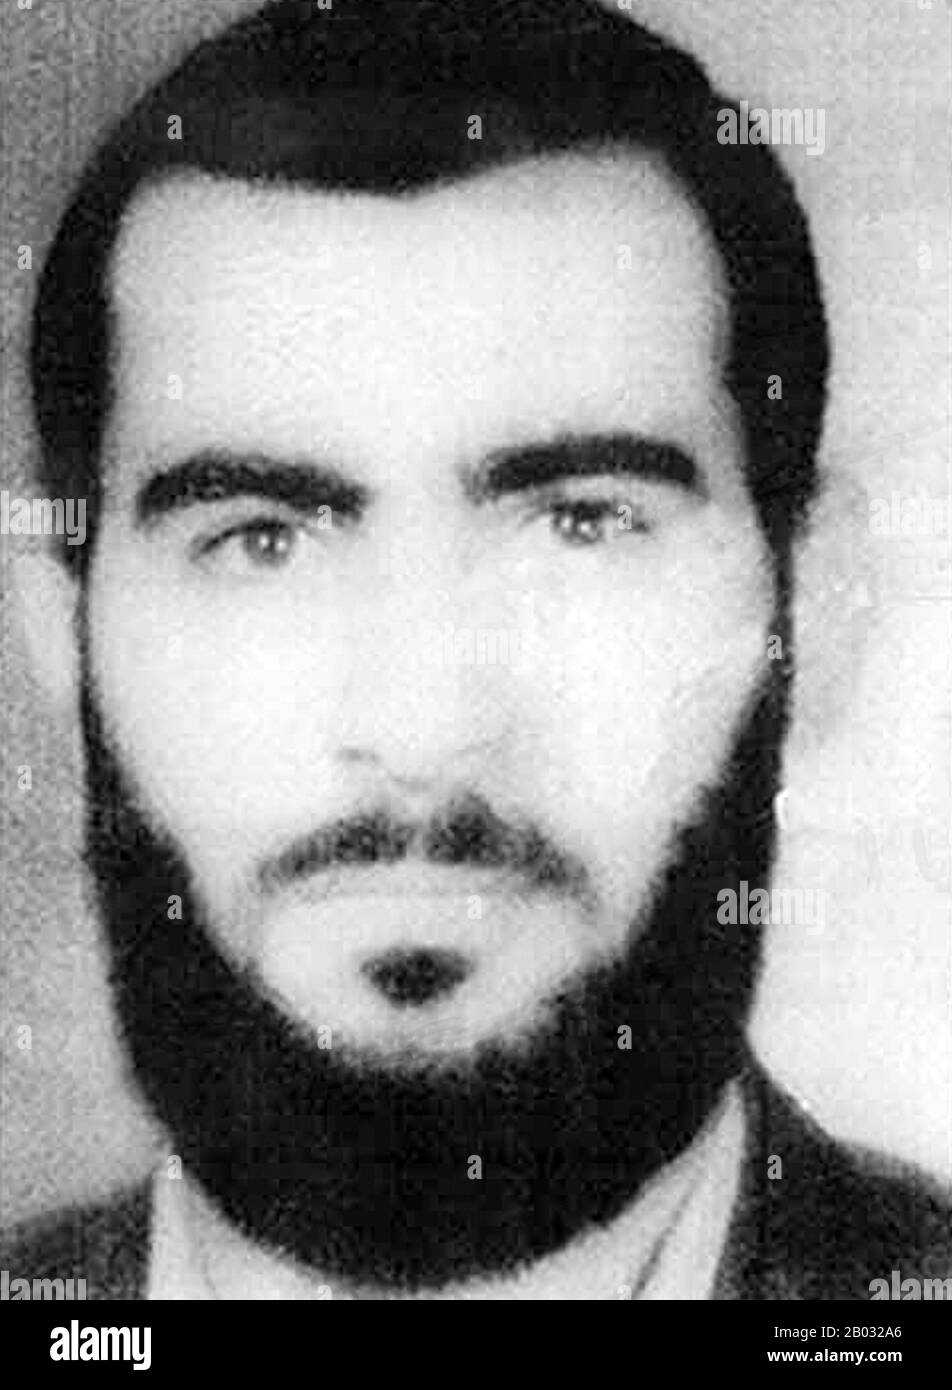 Abu Bakr al-Baghdadi ist der Führer des Islamischen Staates Irak und Syrien (ISIS), einer islamischen Bewegung des Salafi-Dschihadisten im westlichen Irak, des ägyptischen Sinai, Libyens, Nordostnigerias und Syriens, die sich selbst als "Islamischer Staat" (ad-Dawlah al-Islamiyah) bezeichnet. Am 4. Oktober 2011 hat das US-Außenministerium al-Baghdadi als "Specially Designated Global Terrorist" gelistet und eine Belohnung von bis zu 10 Millionen US-Dollar für Informationen angekündigt, die zu seiner Erfassung oder seinem Tod führen. Stockfoto